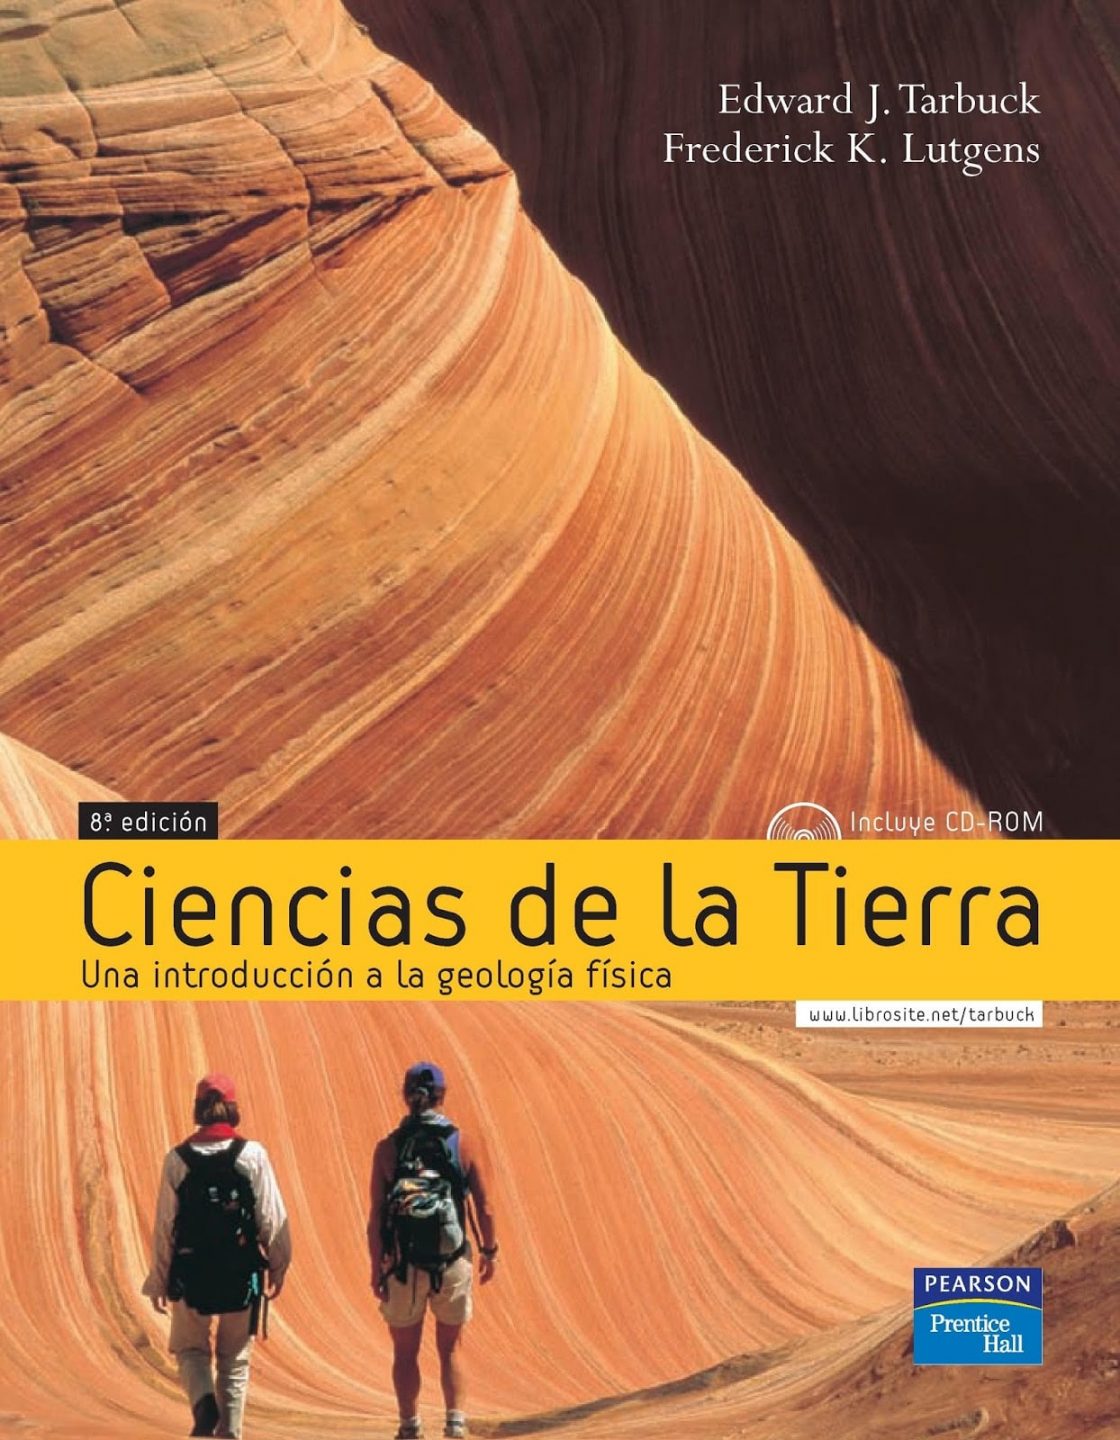 Ciencias de la Tierra: una Introducción a la Geología Física 8 Edición Edward J. Tarbuck PDF